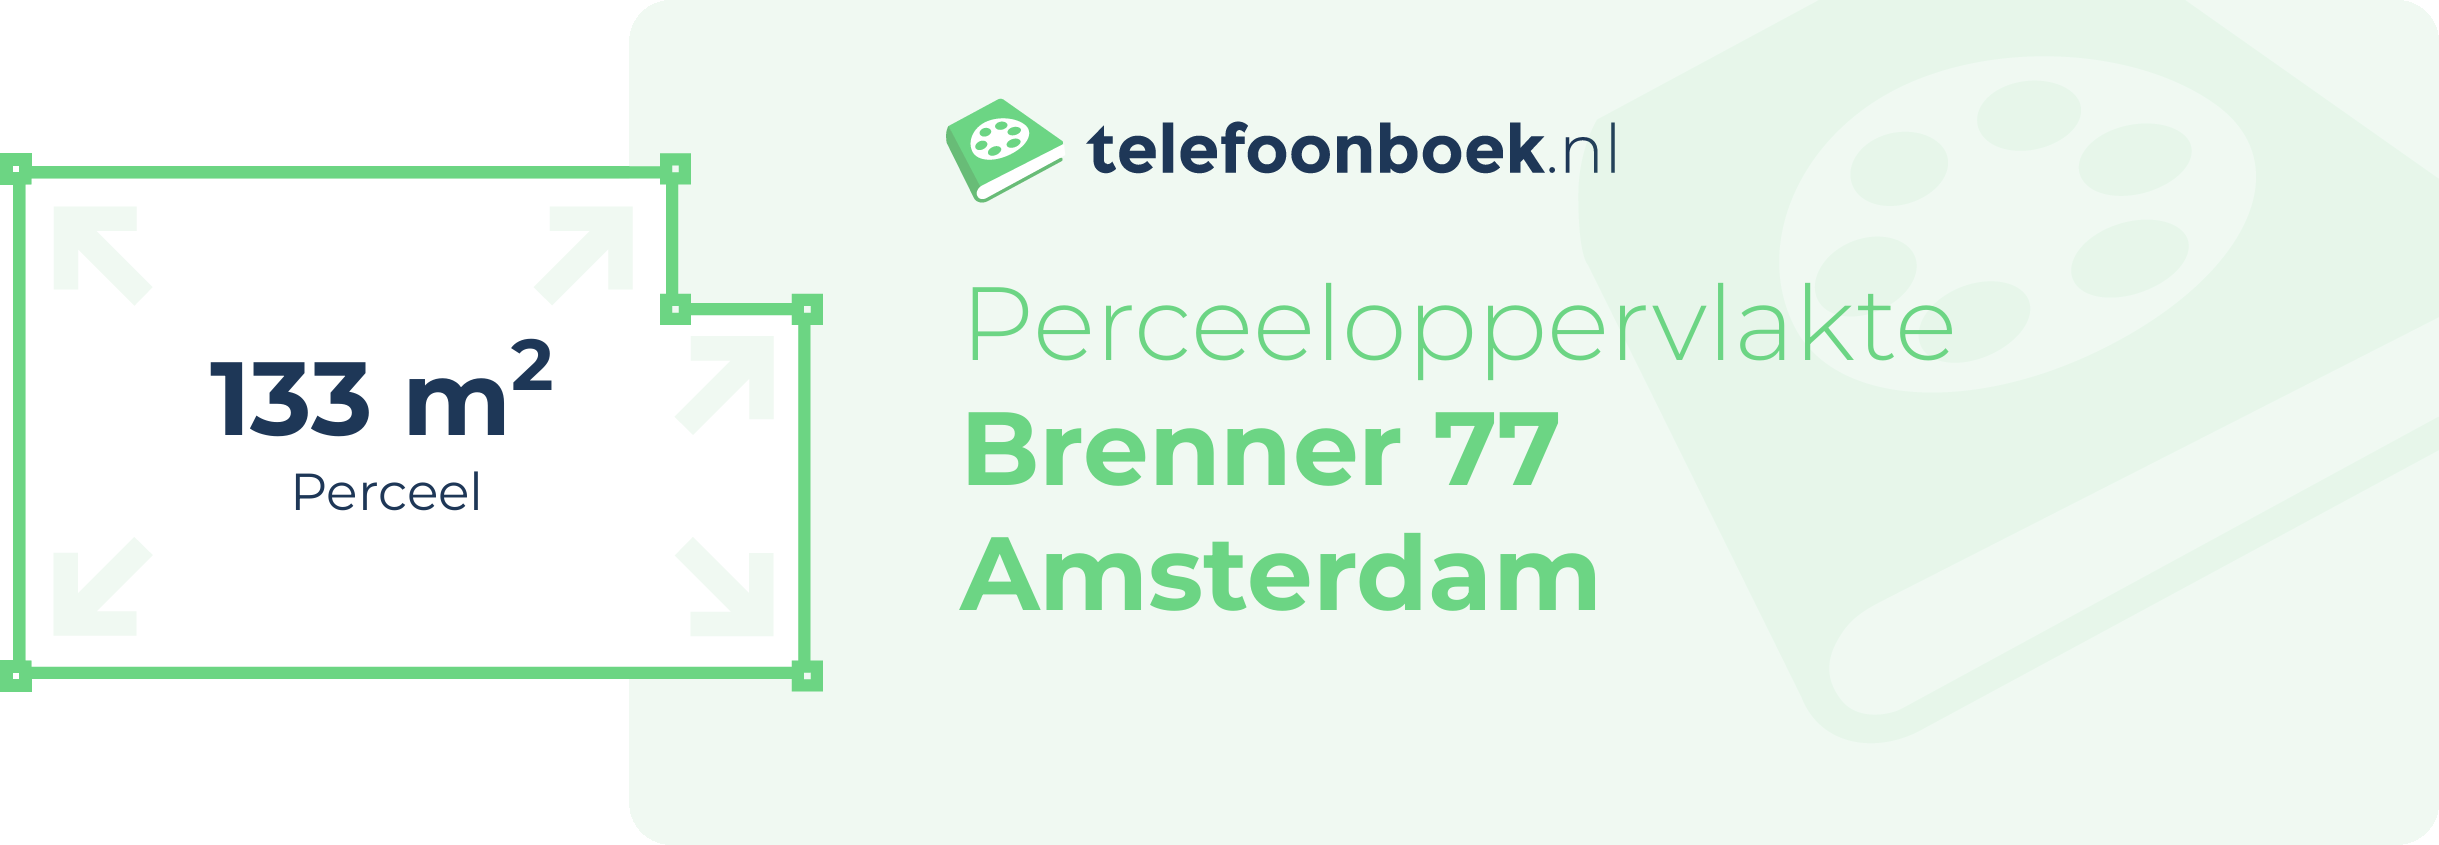 Perceeloppervlakte Brenner 77 Amsterdam